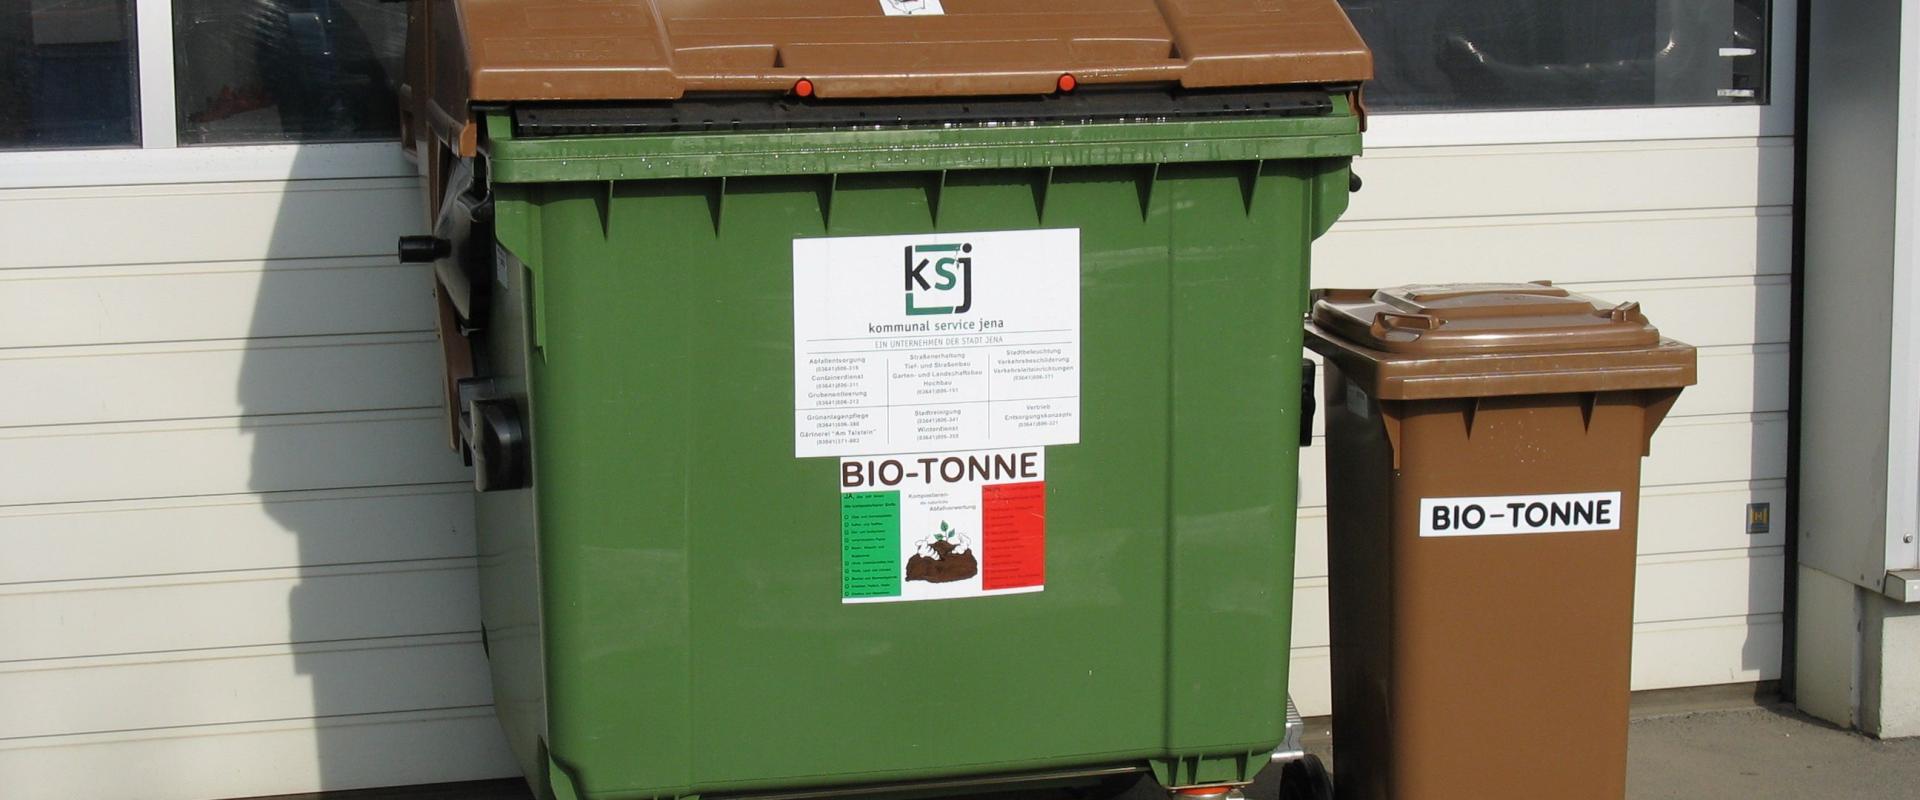 Behälter für Bioabfälle